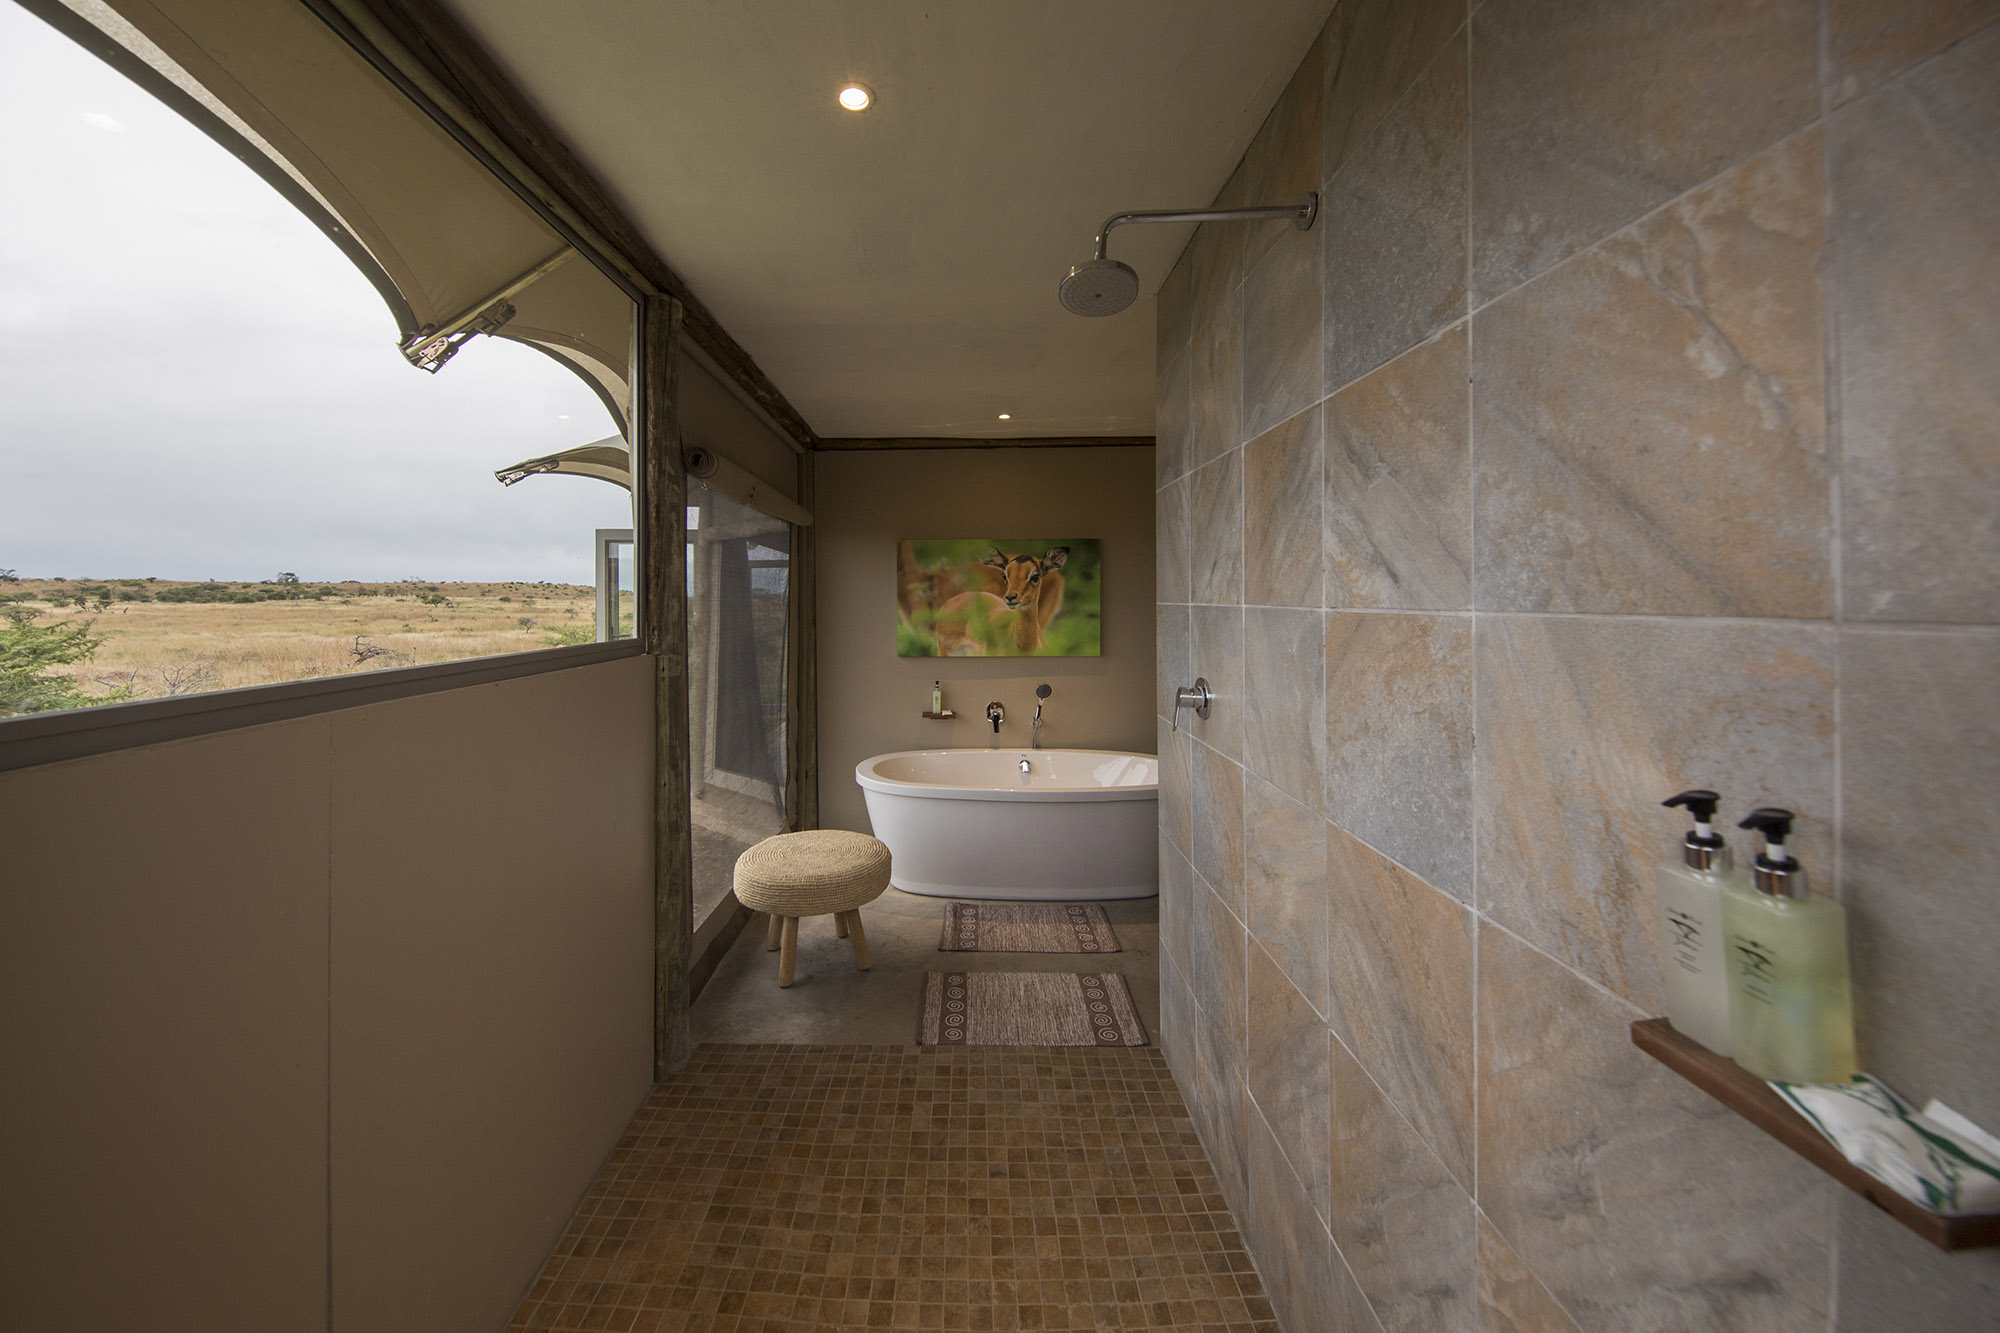 Ndaka safari lodge - bathroom